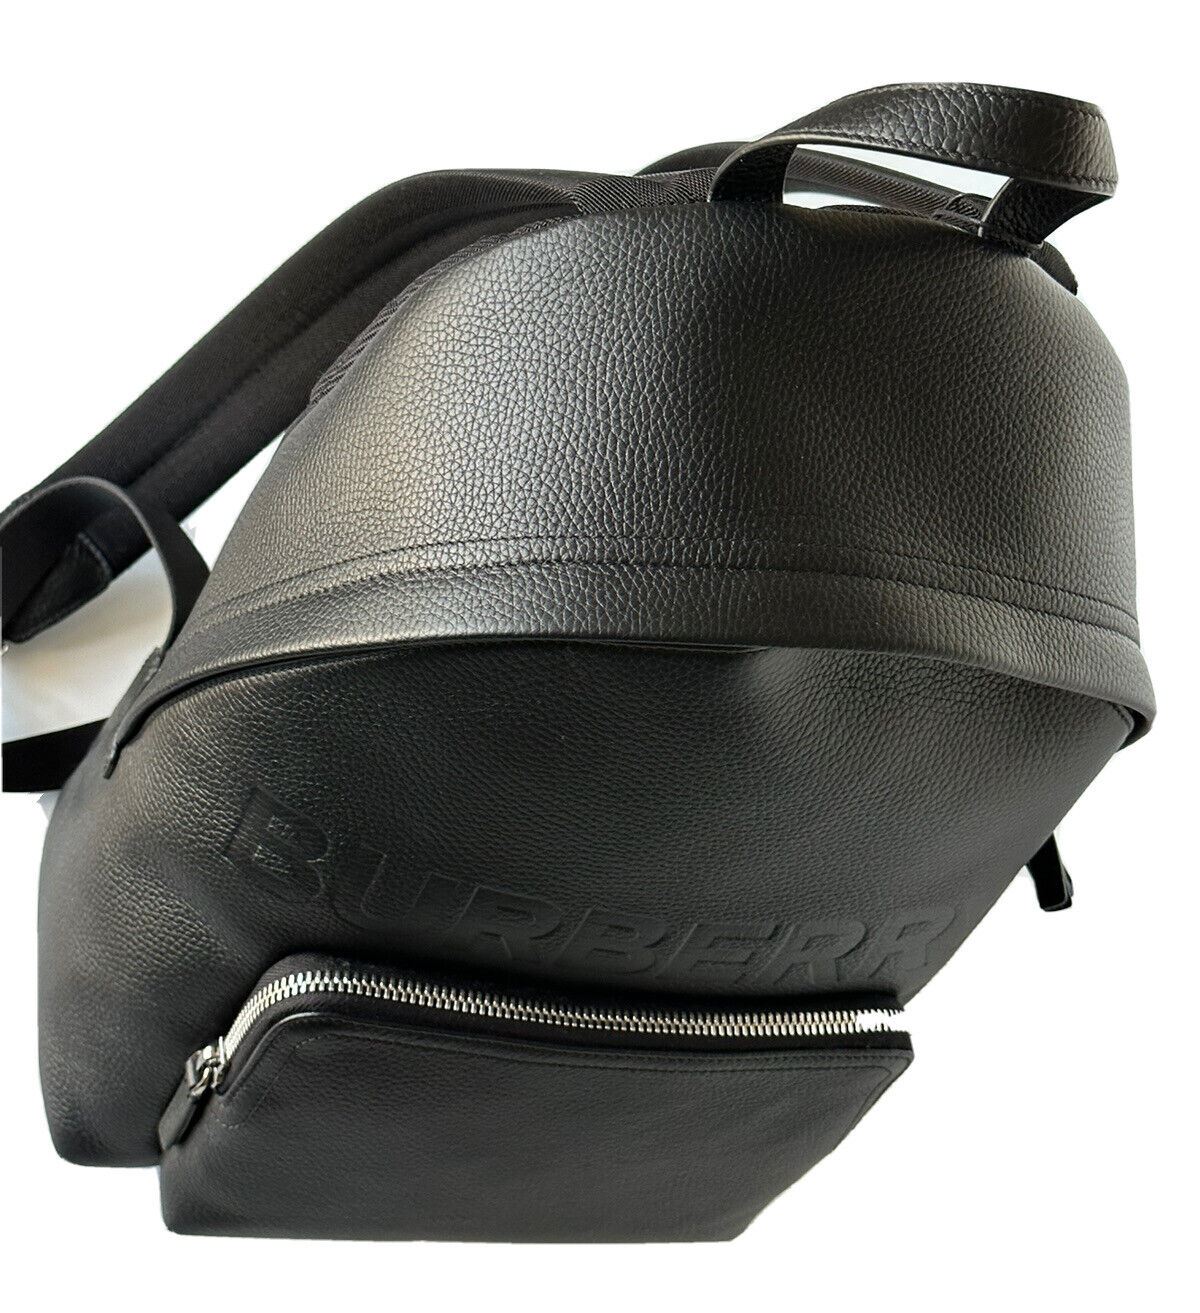 NWT $1650 Burberry Кожаный рюкзак с логотипом Abbeydale Черный 80507631 